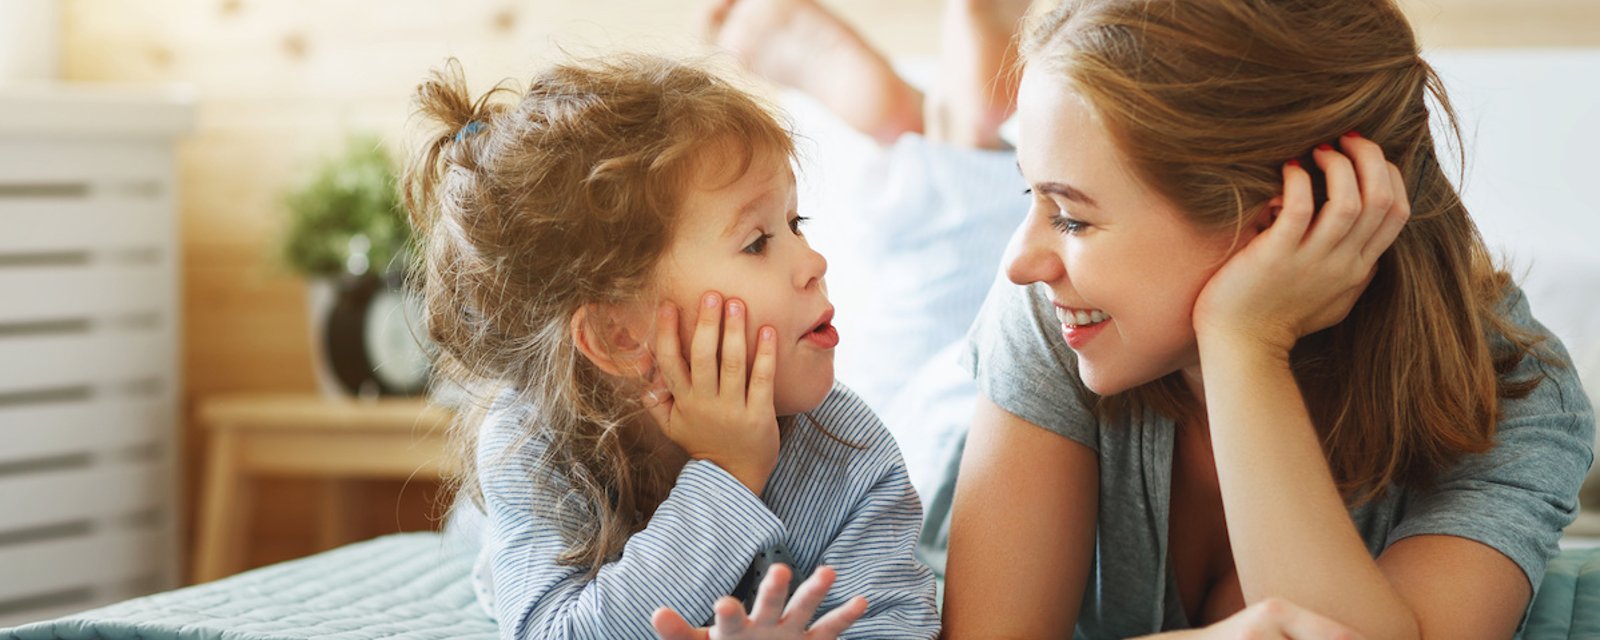 7 phrases à répéter chaque jour à votre enfant pour l'aider à bien grandir